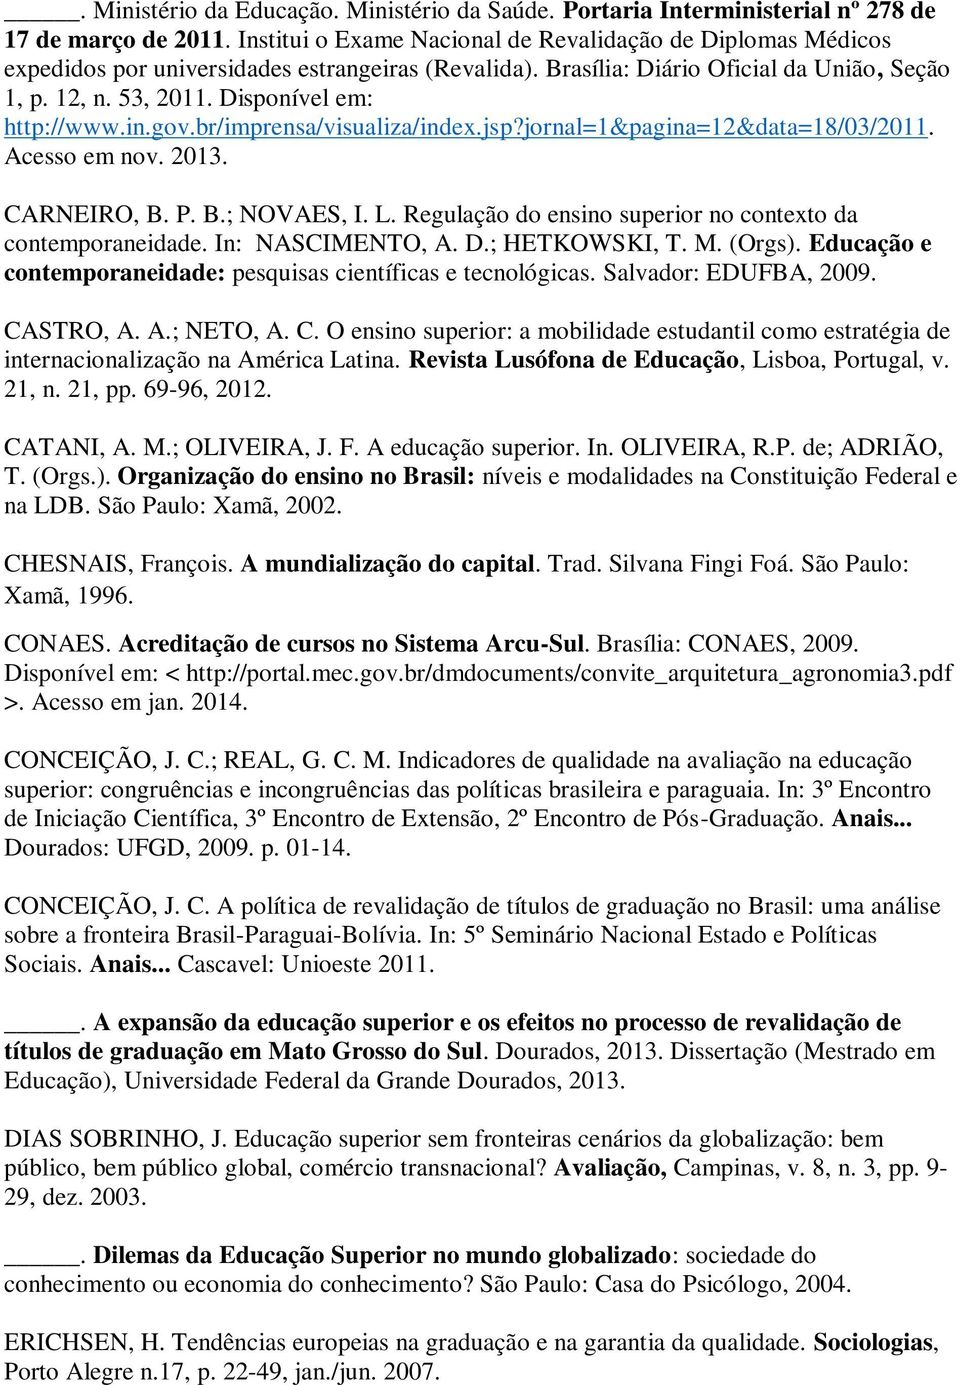 Disponível em: http://www.in.gov.br/imprensa/visualiza/index.jsp?jornal=1&pagina=12&data=18/03/2011. Acesso em nov. 2013. CARNEIRO, B. P. B.; NOVAES, I. L.